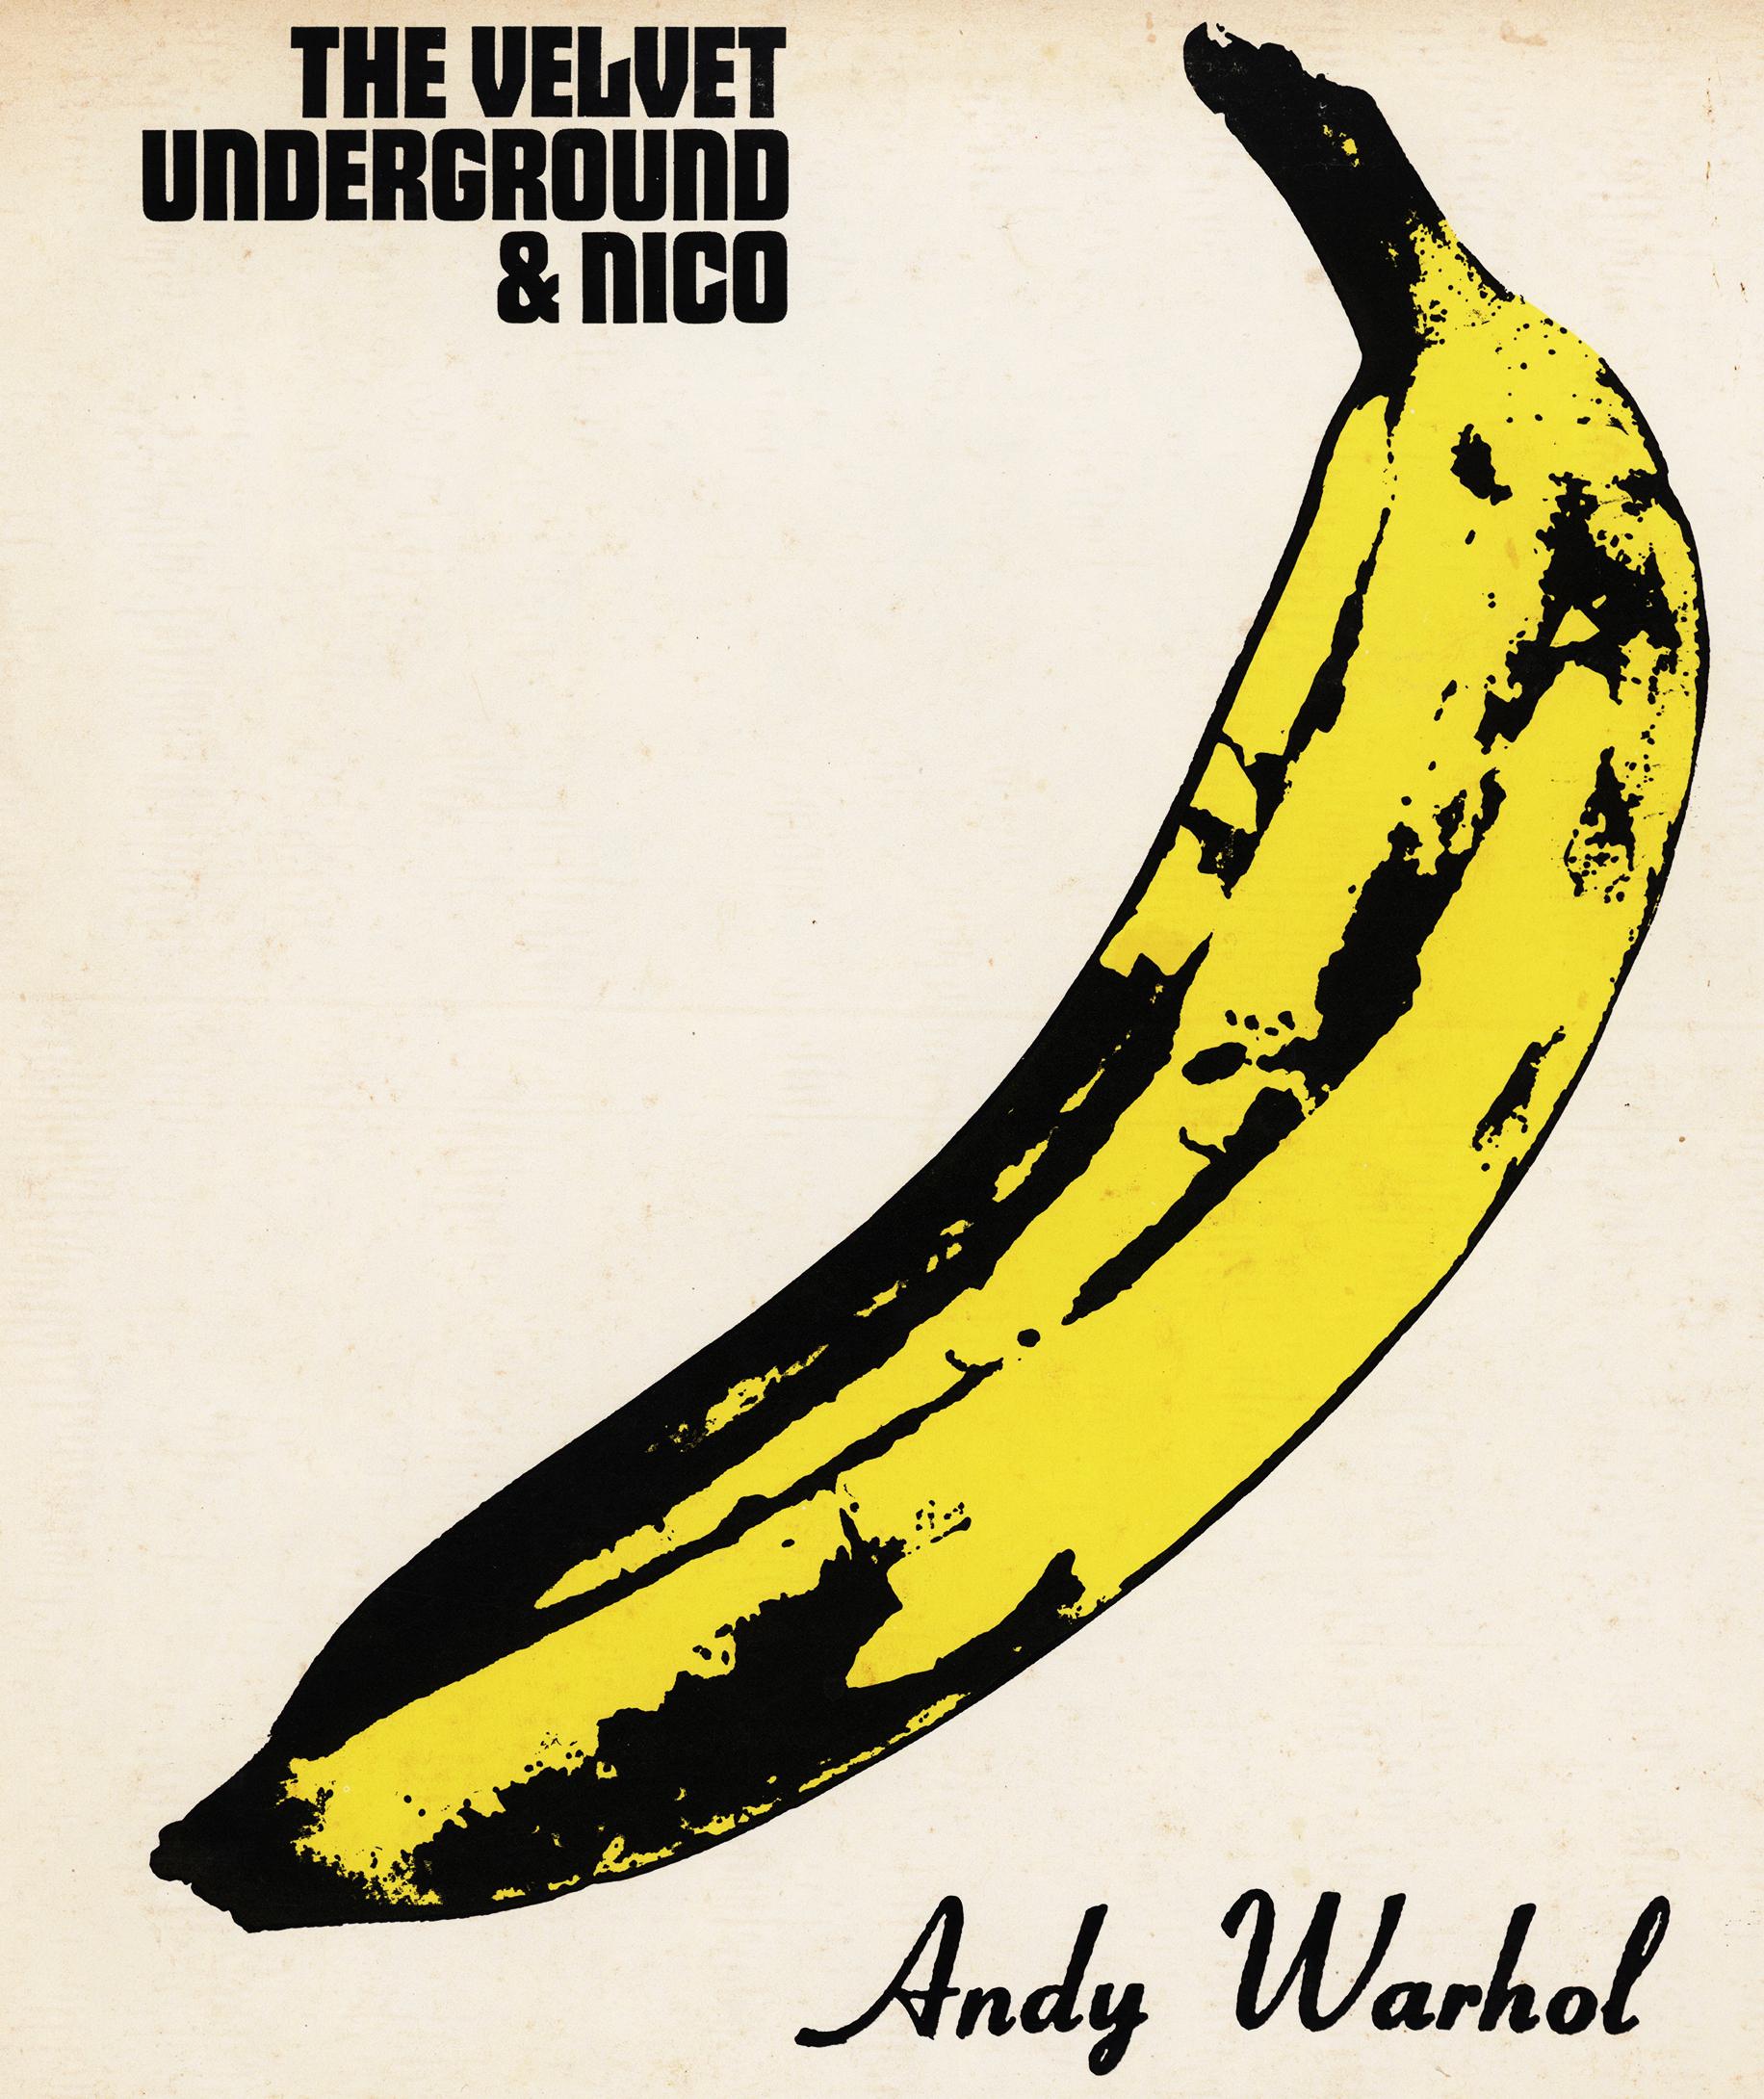 The Velvet Underground & Nico
Selbstbetitelt, 1985
LP, Wiederveröffentlichung, Remastered
Verve Records 
V6 5008
Andy Warhol produzierte und gestaltete das Titelbild

Andy Warhol Banane Cover Art:
The Velvet Underground & Nico Vinyl Record circa